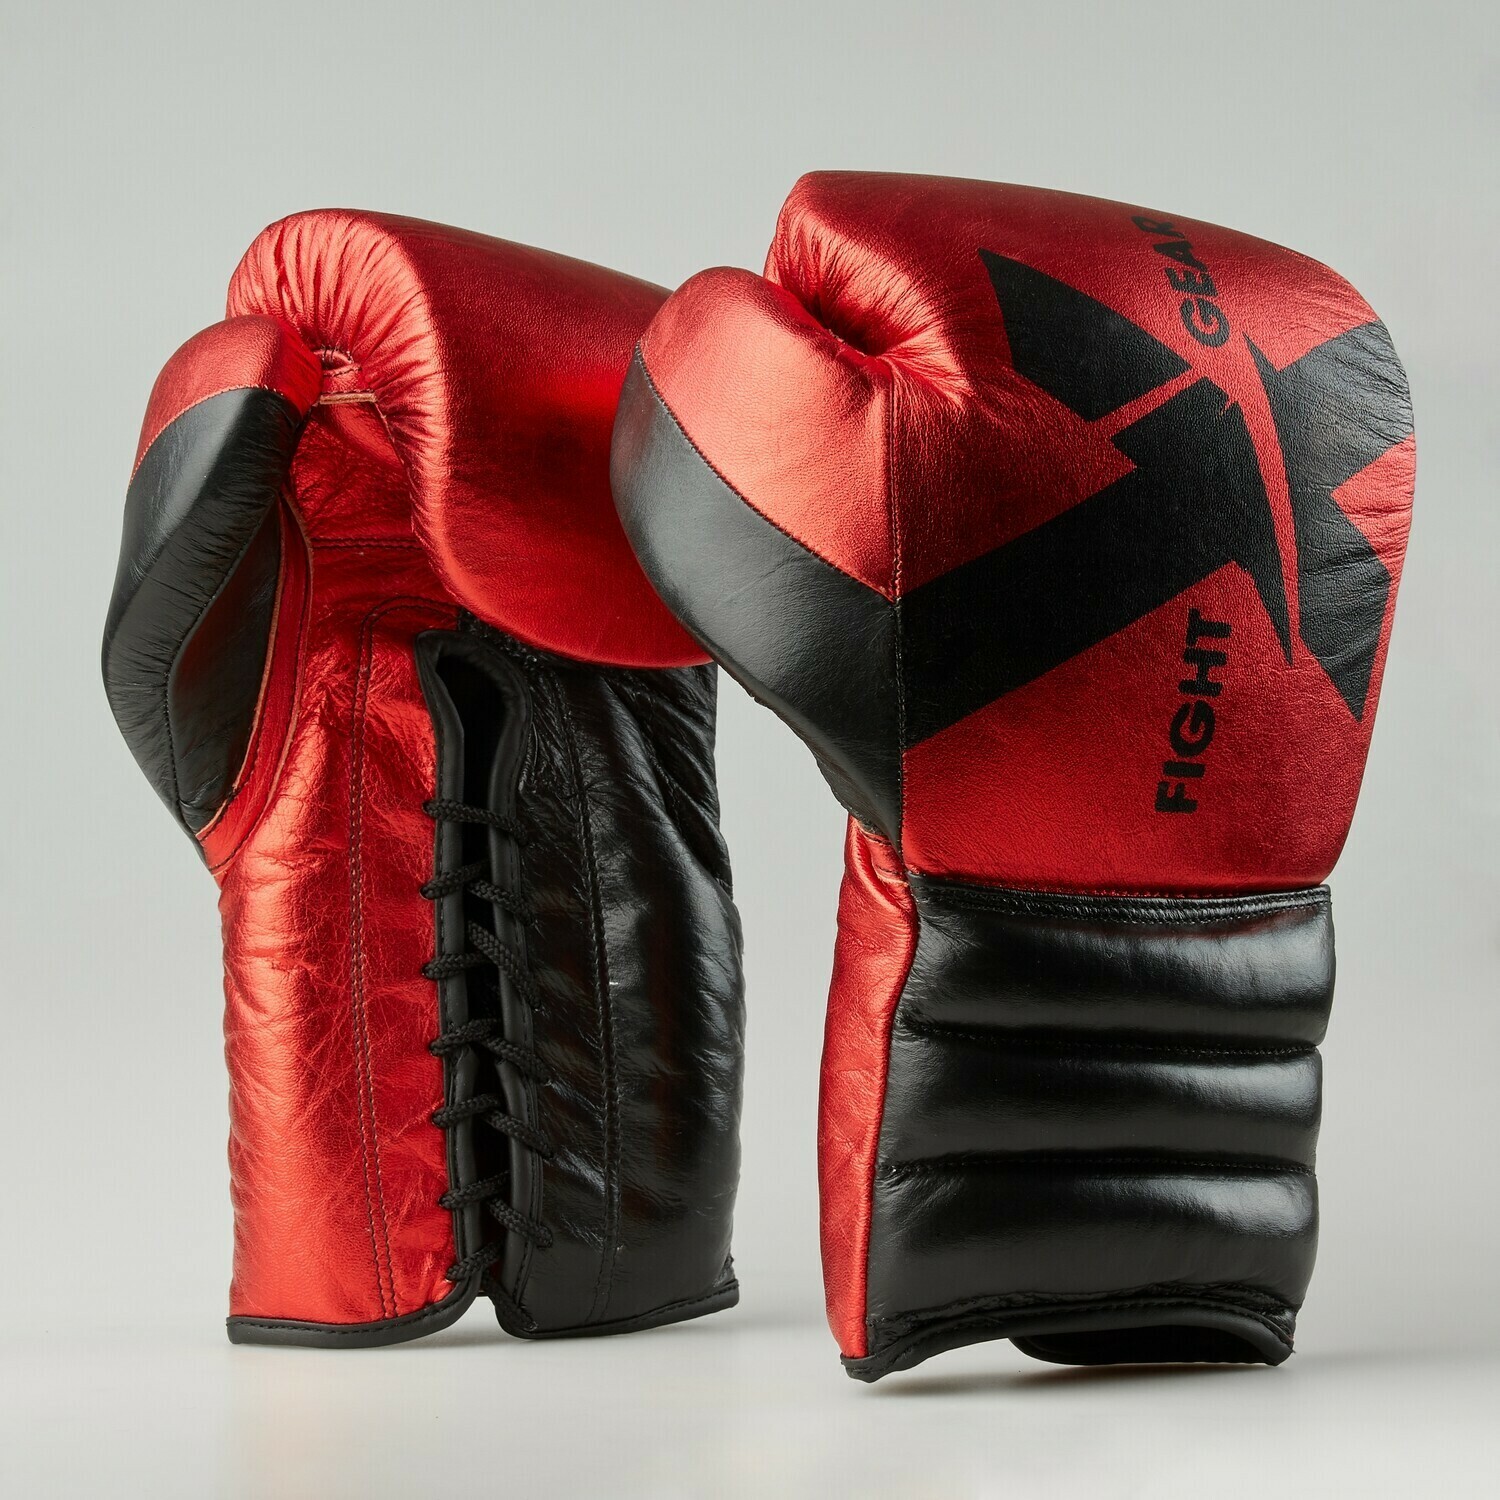 Профессиональные боксерские перчатки CDX Elite Pro. Премиум кожа.